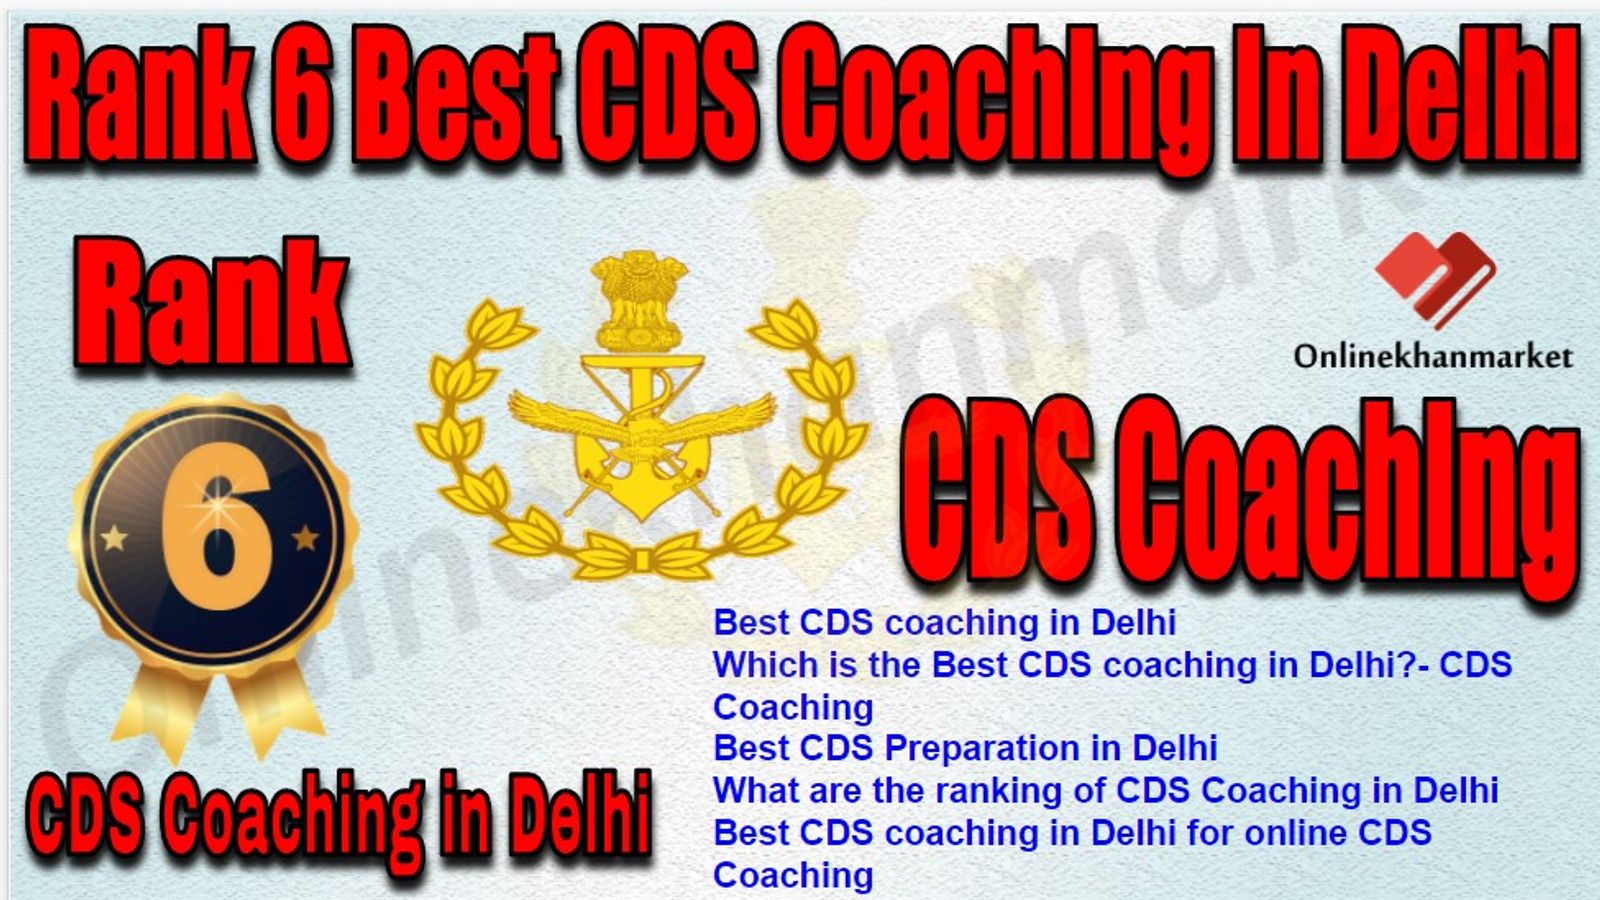 Rank 6 Best CDS Coaching in Delhi